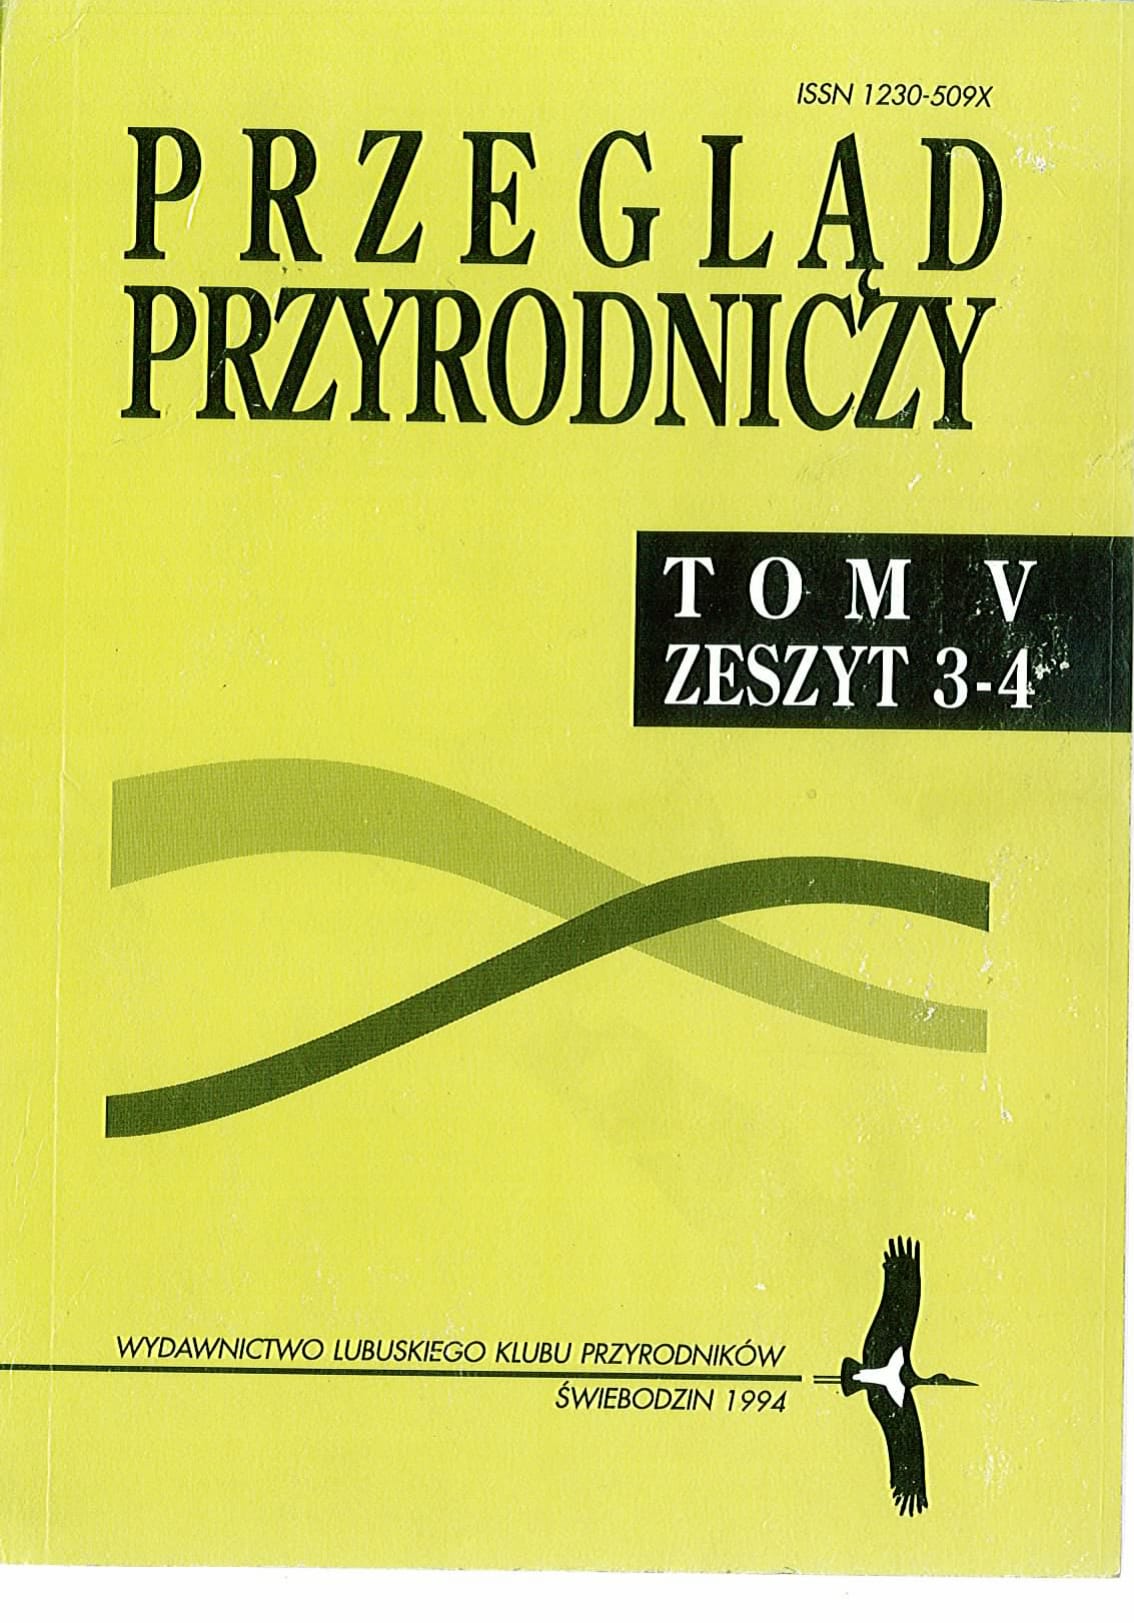 PP T.5 Z.3 4 1994.1 1